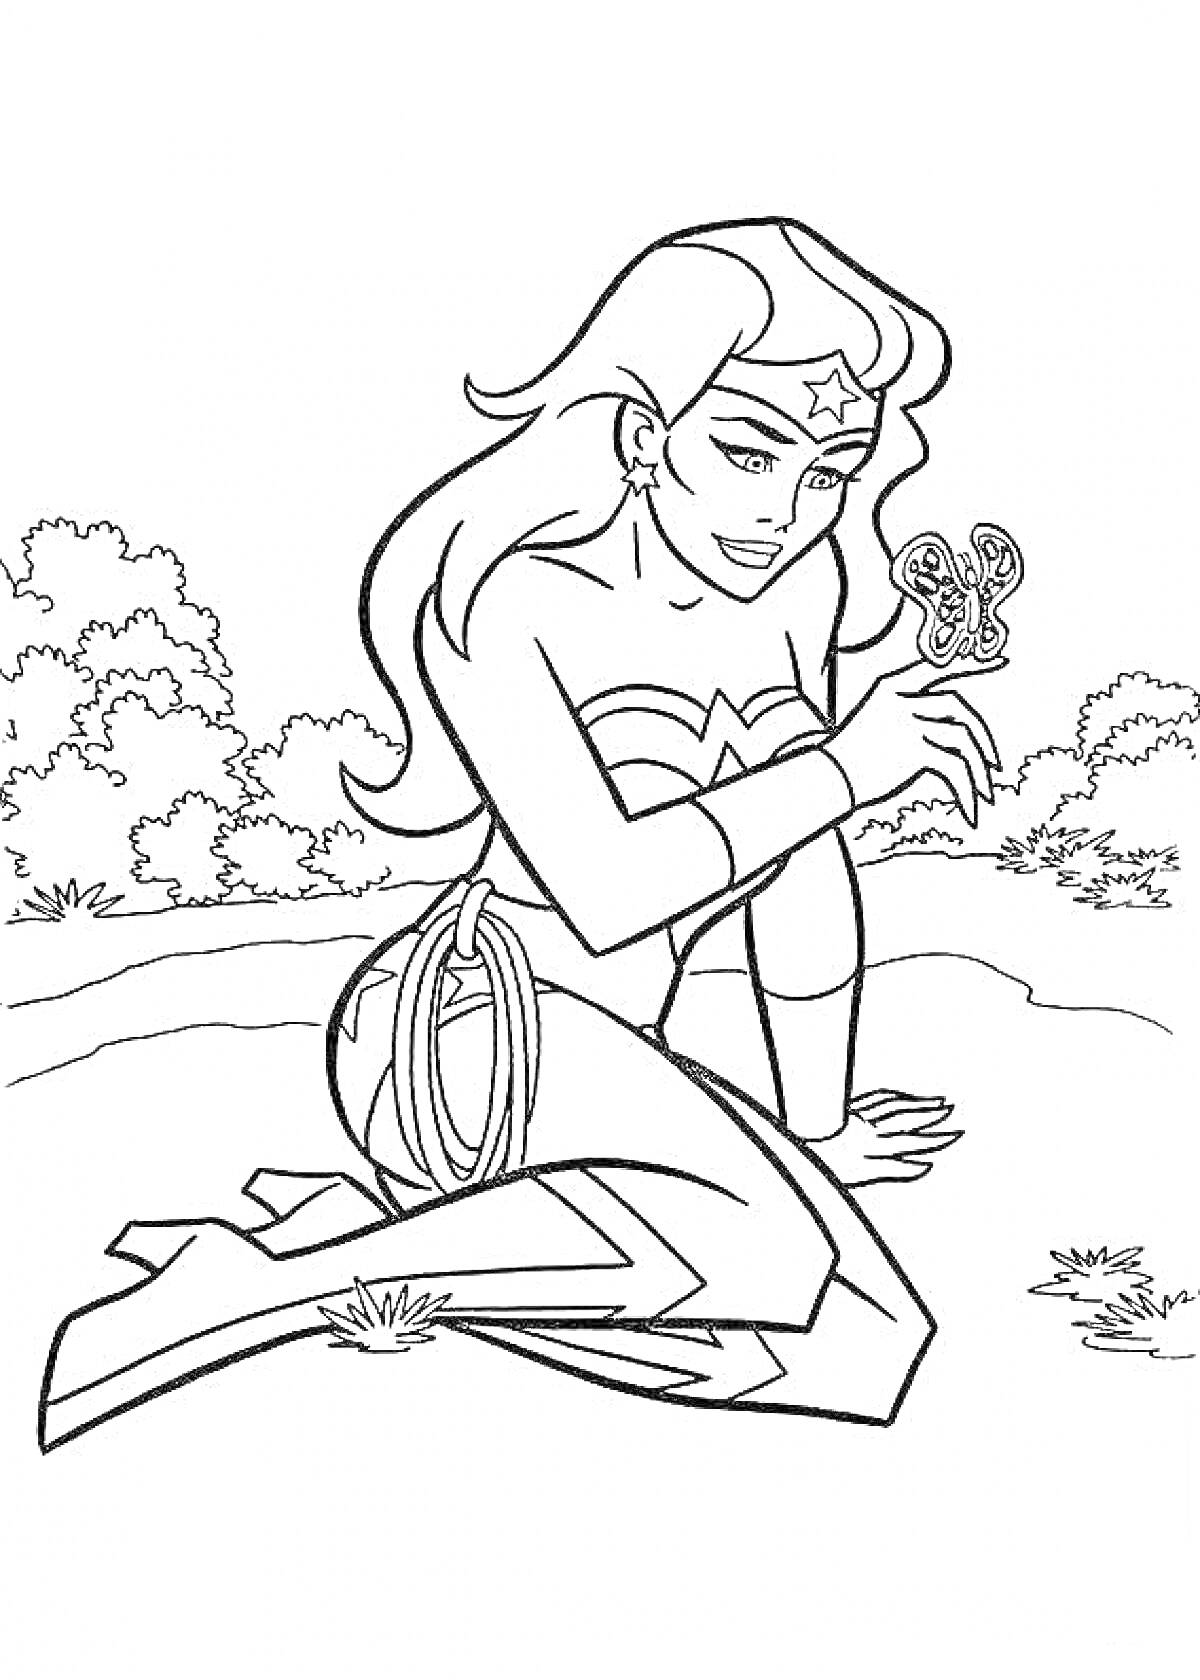 Раскраска Чудо-женщина сидит на коленях с волшебной верёвкой, держа в руках бабочку на фоне деревьев